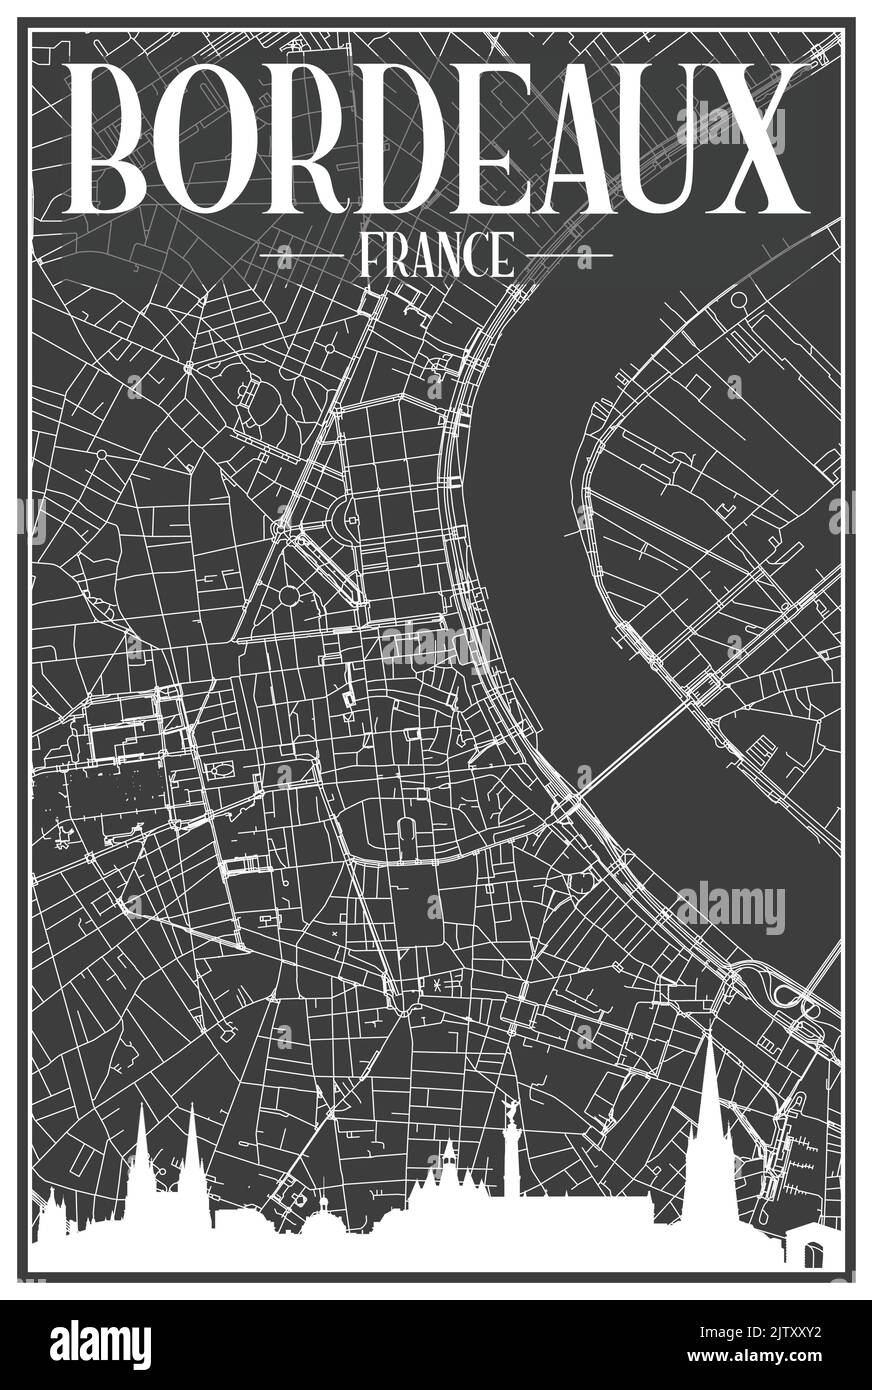 Affiche de ville sombre avec vue panoramique sur la ville et rues dessinées à la main sur fond gris foncé du centre DE BORDEAUX, EN FRANCE Illustration de Vecteur